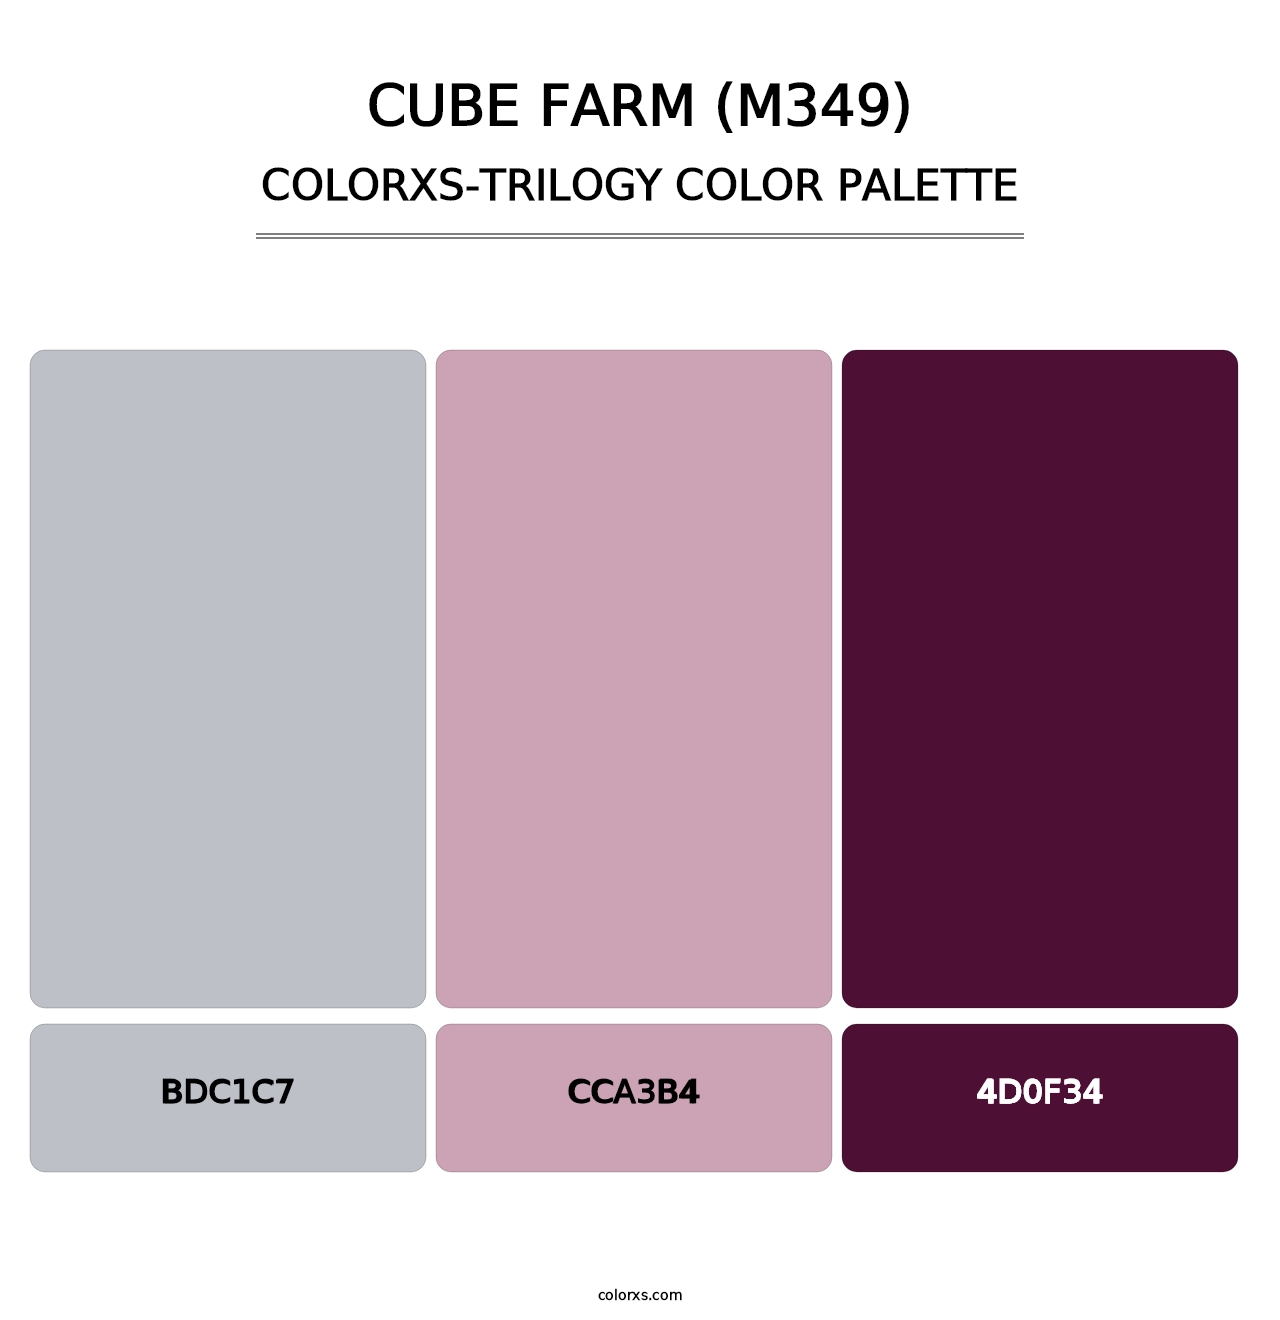 Cube Farm (M349) - Colorxs Trilogy Palette